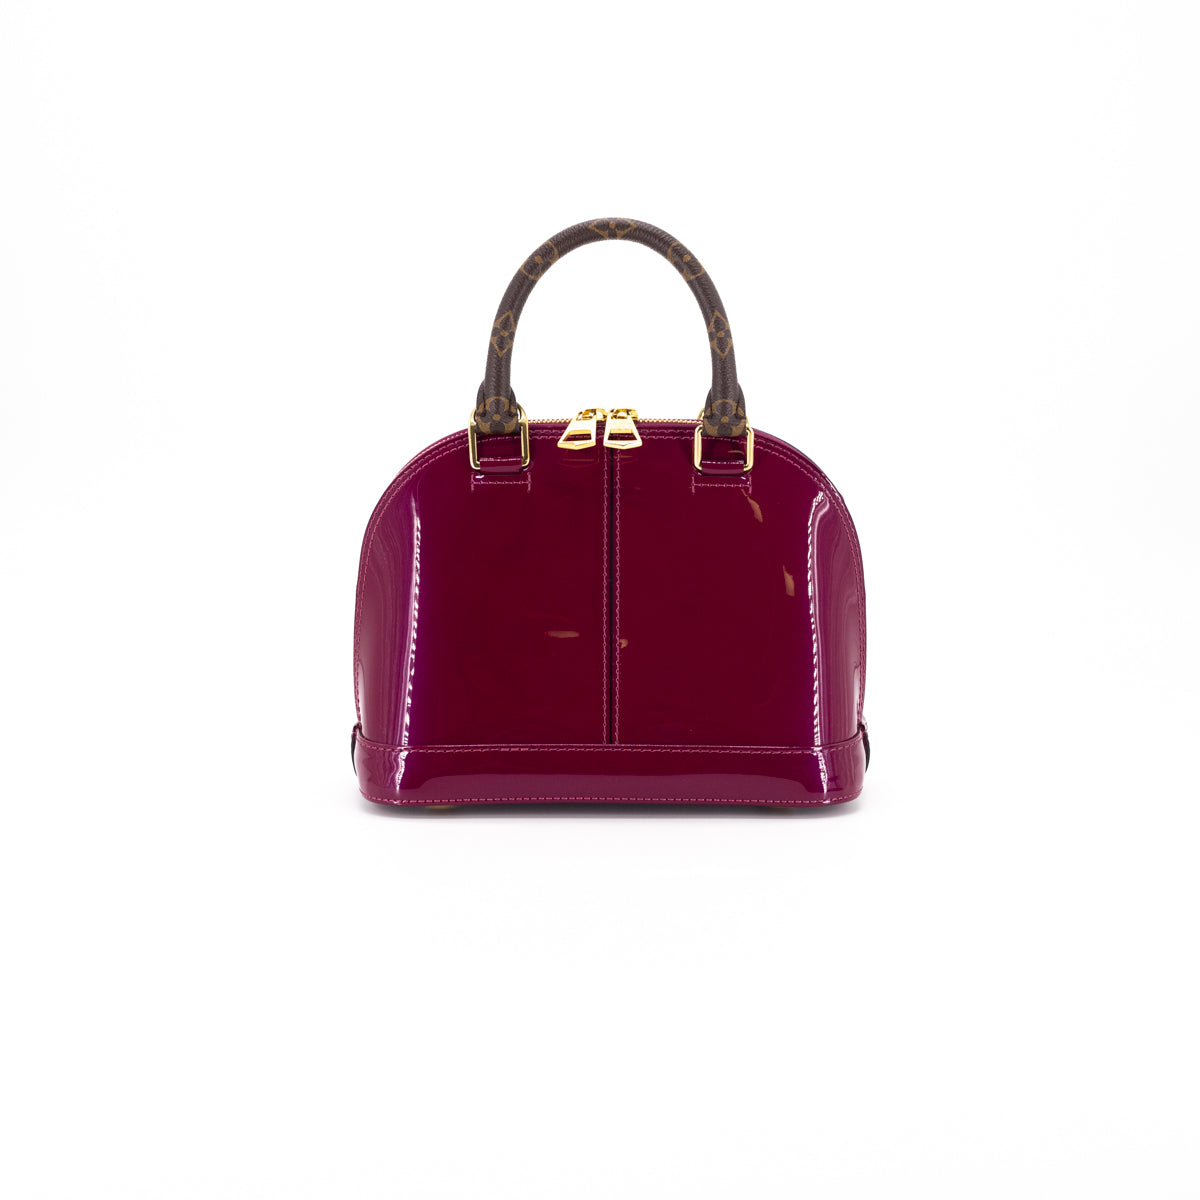 Louis Vuitton Monogram Alma GM Amarante Purple Vernice Leather Handbag  Purse for Sale in Tampa, FL - OfferUp